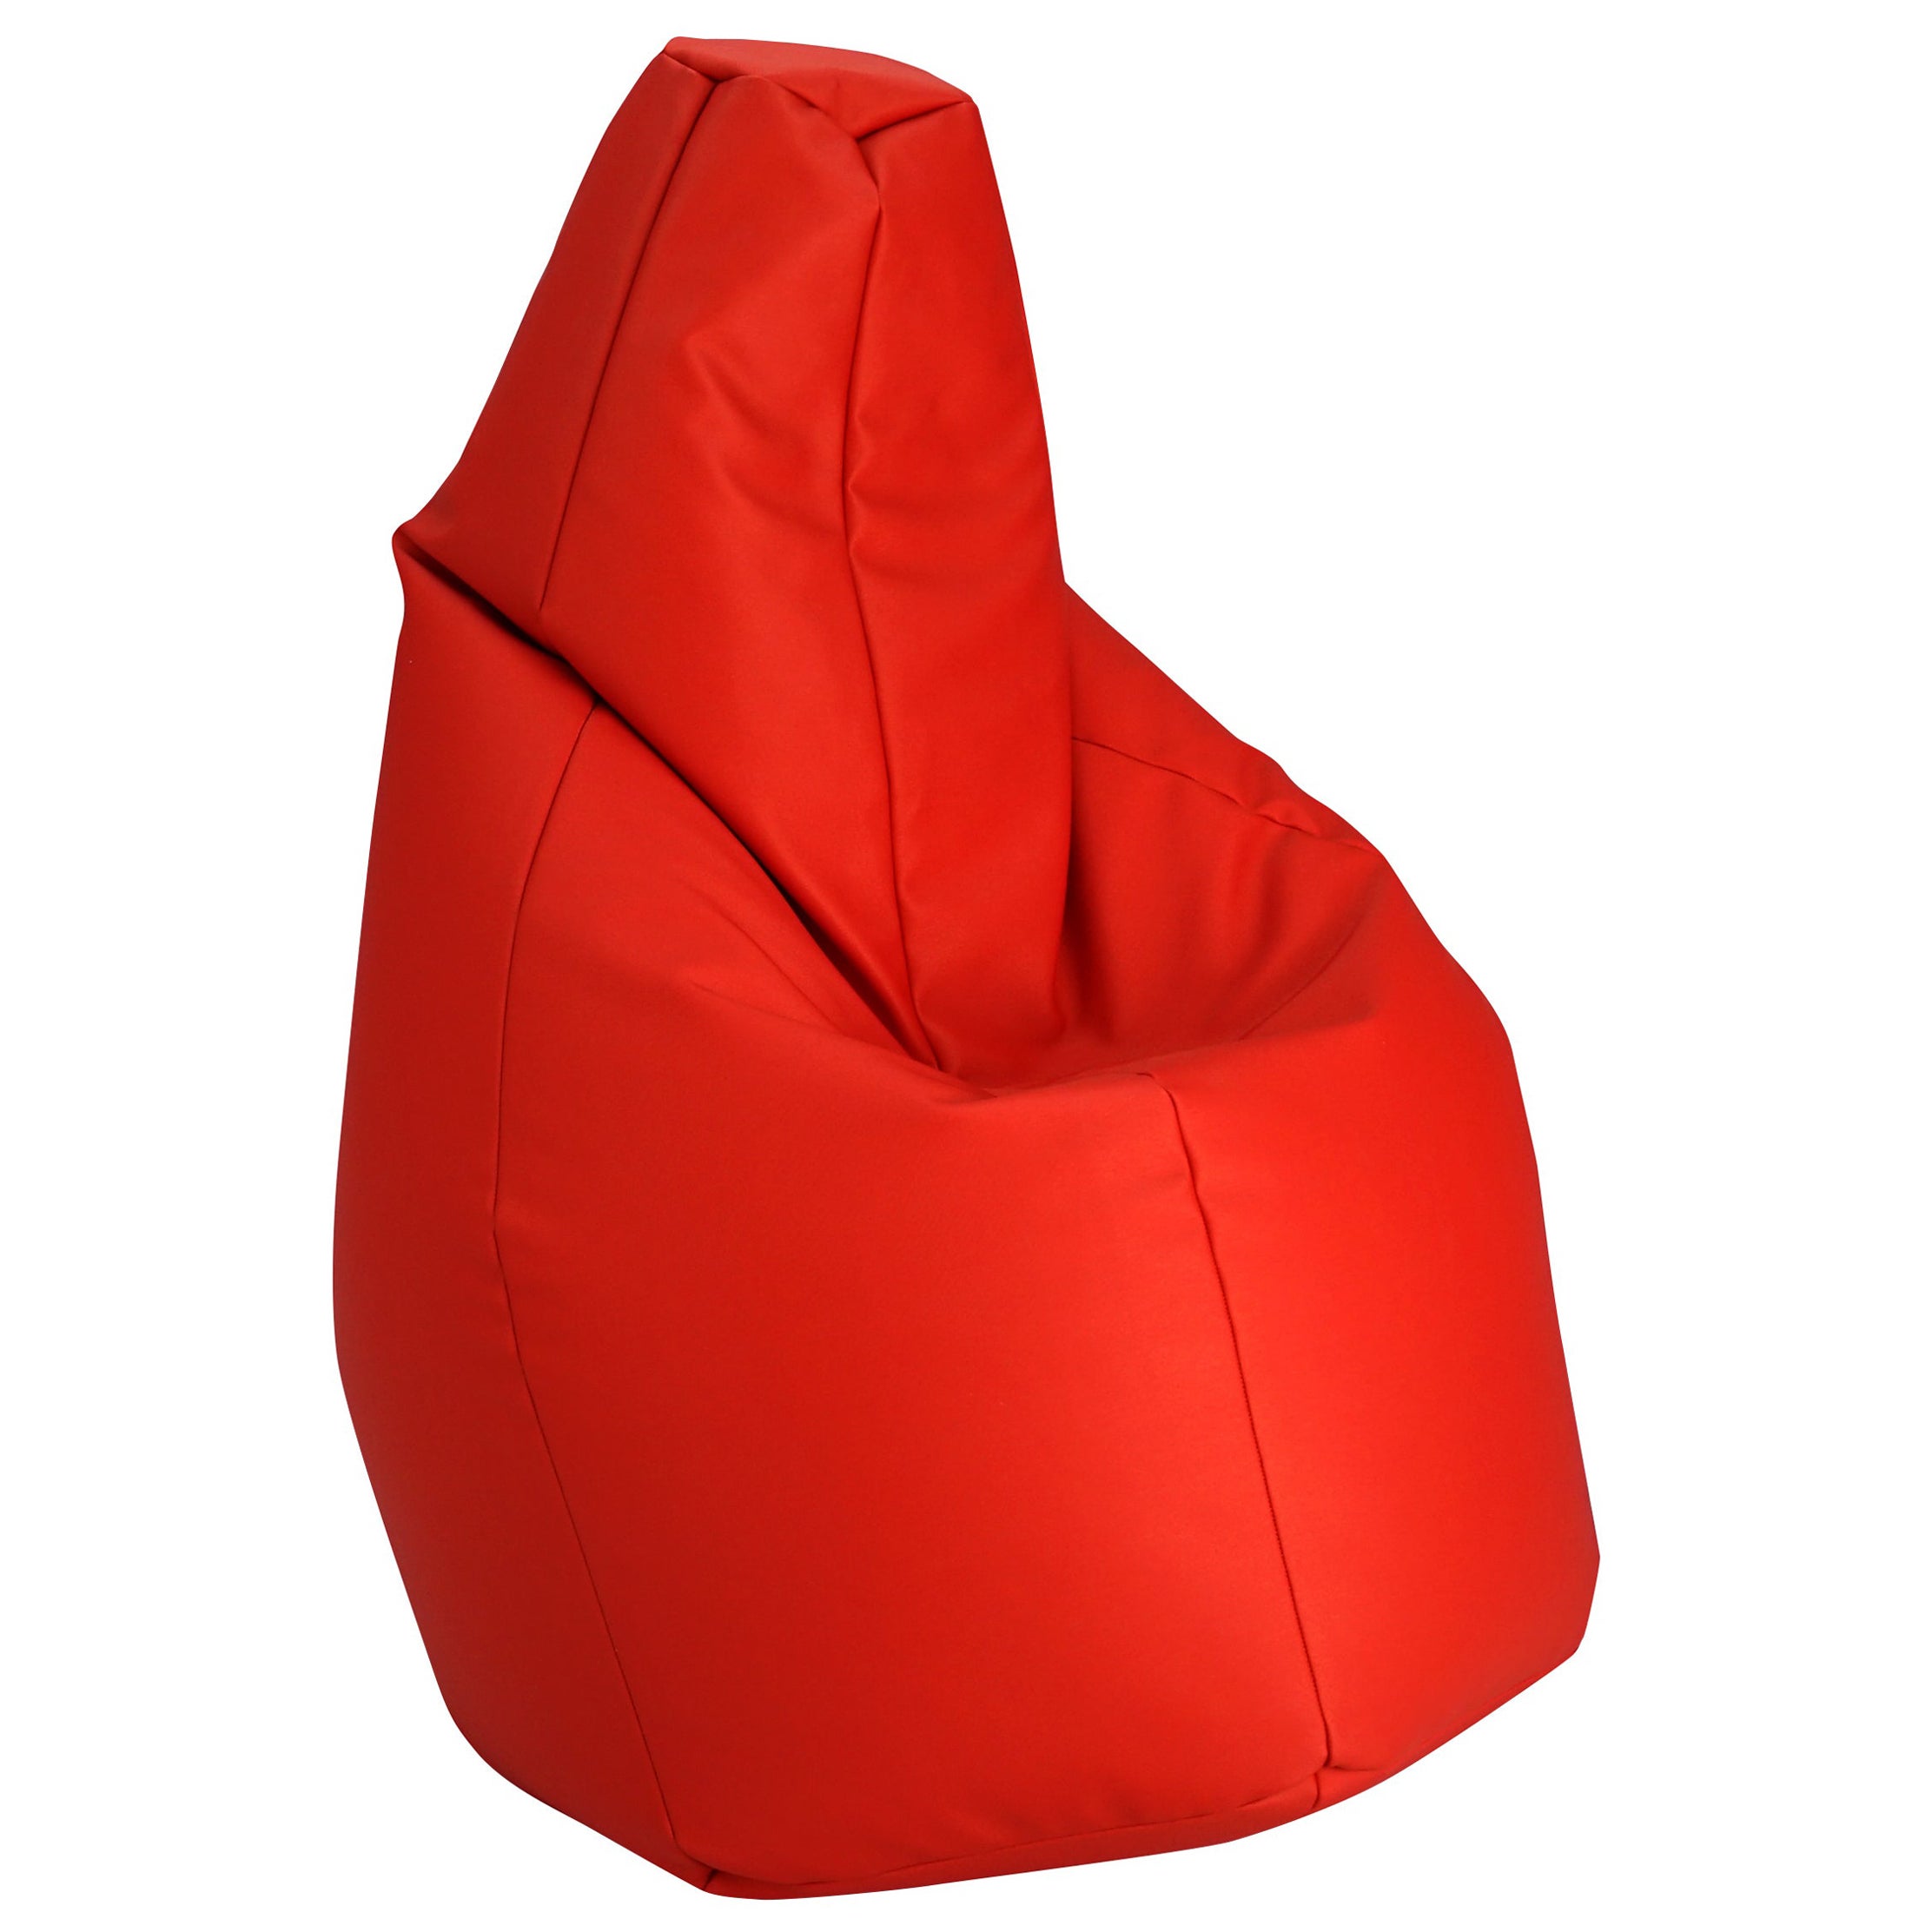 Zanotta Small Sacco in Red Vip Fabric by Gatti, Paolini, Teodoro For Sale